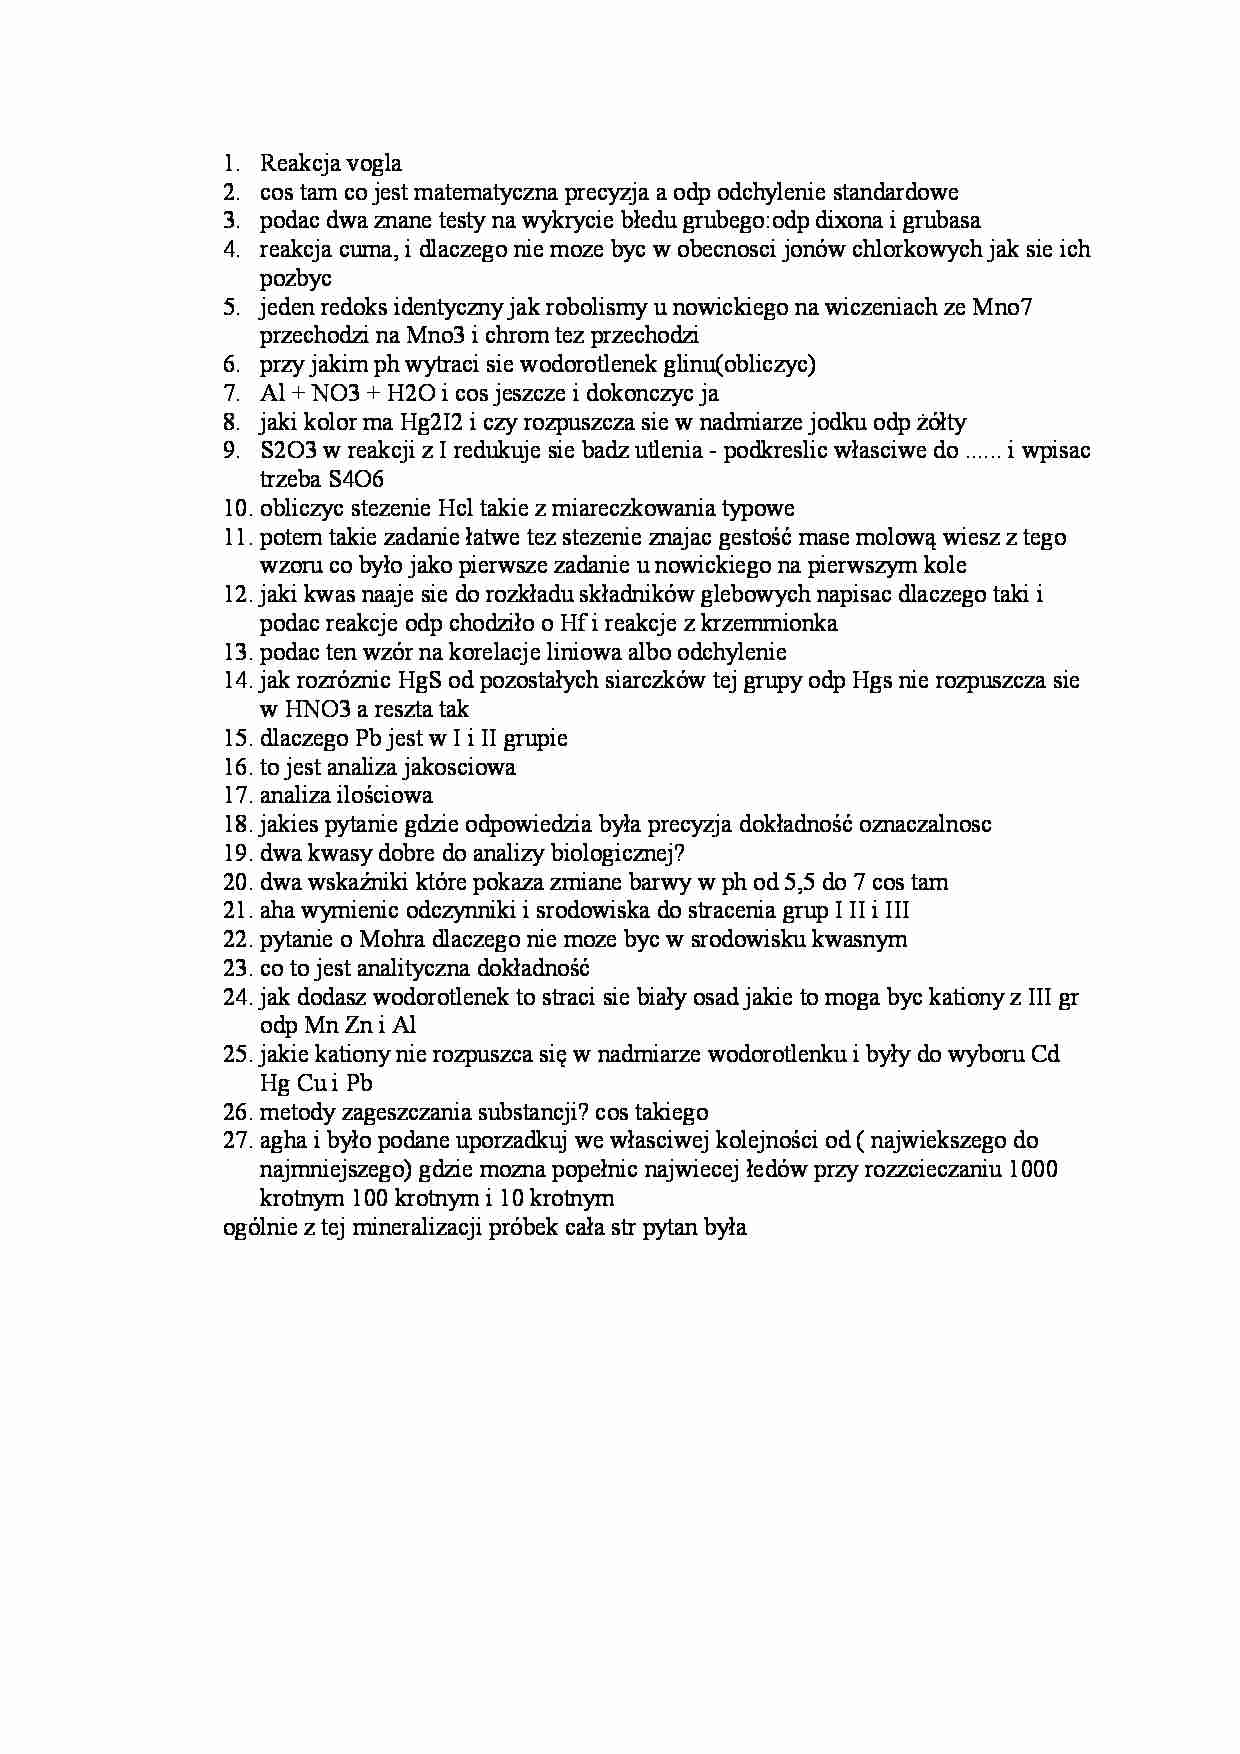 Chemia analityczna pytania z egzaminu2 - strona 1